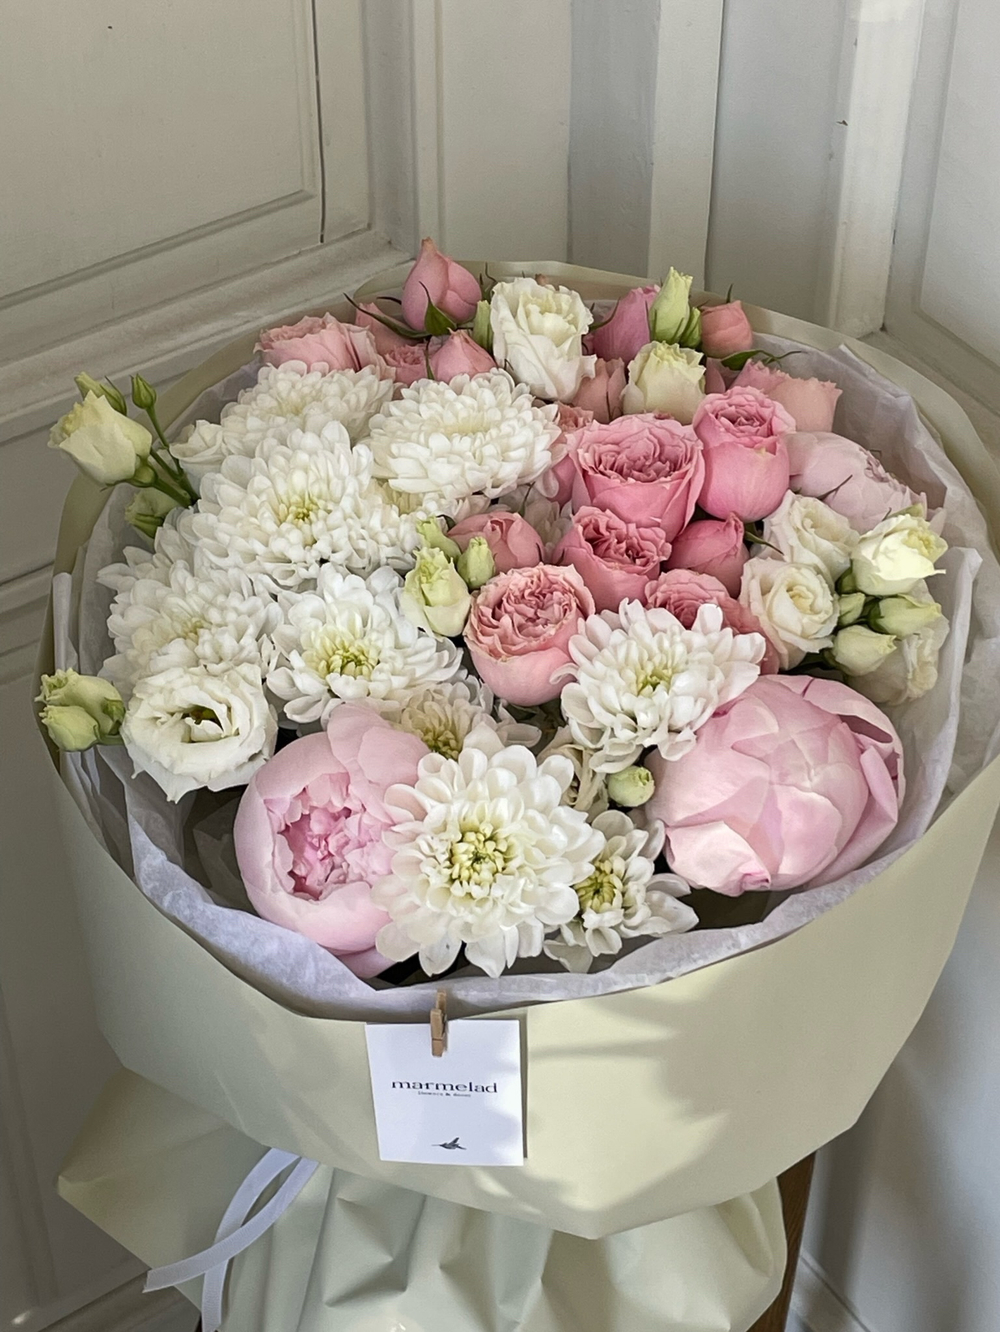 Букет розовые пионы,  хризантемы  с добавлением эустомы  и кустовых роз